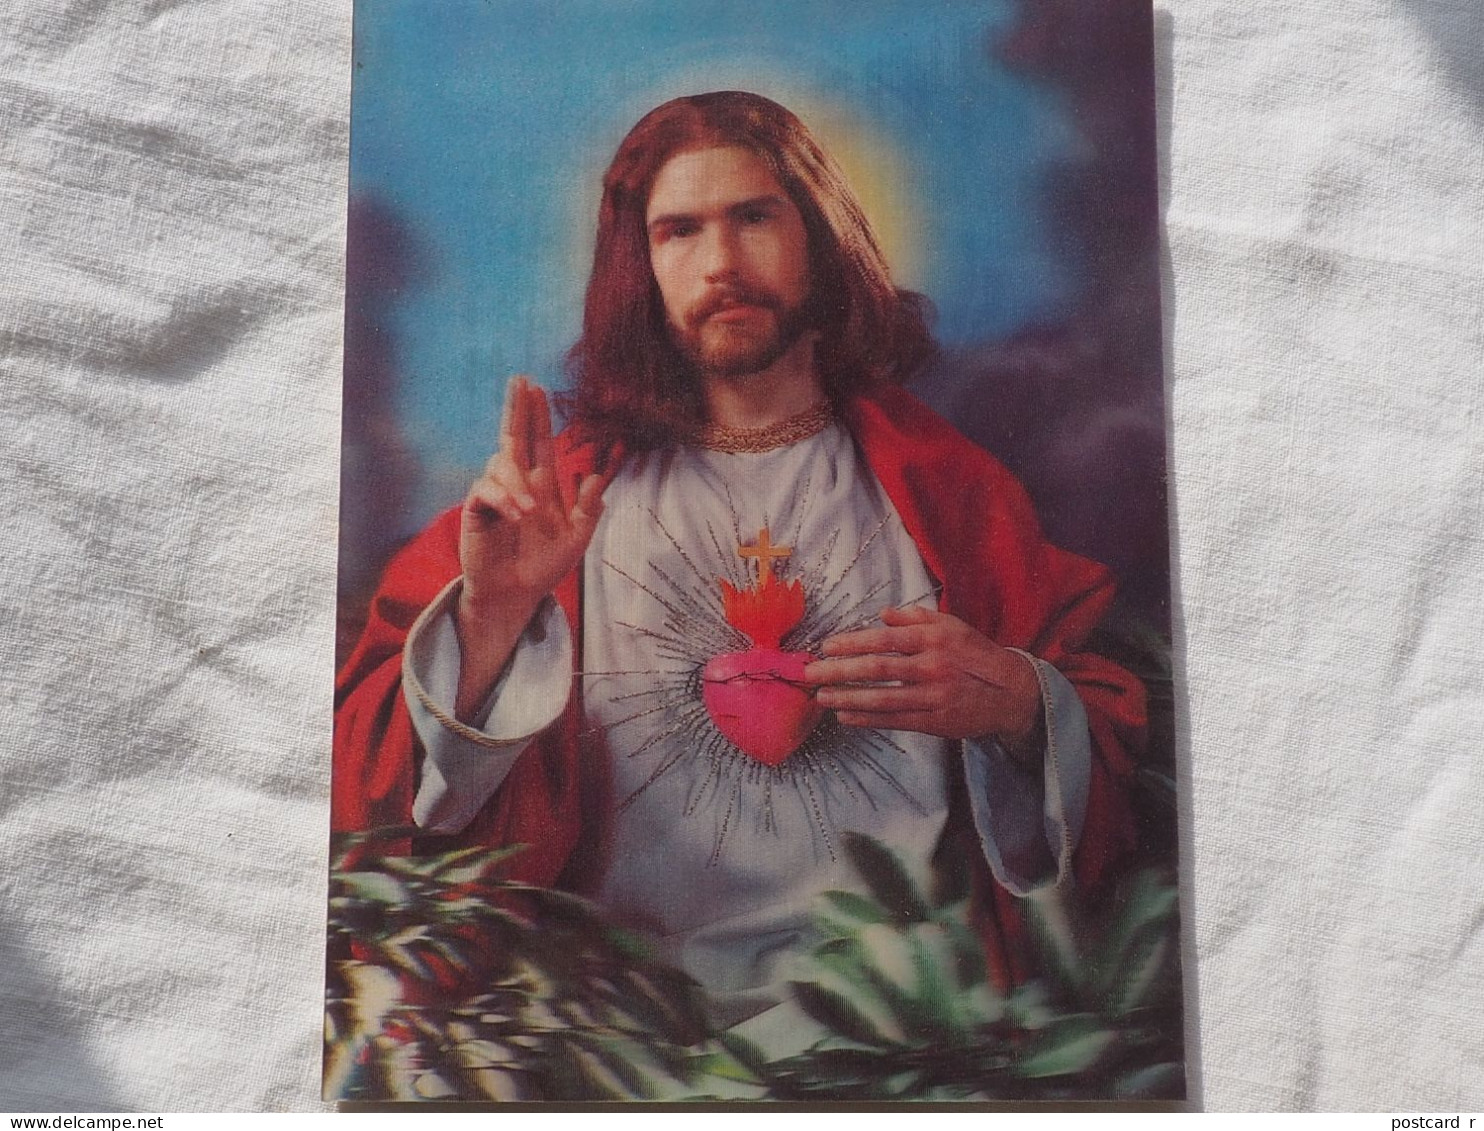 3d 3 D Lenticular Postcard Stereo Religion Prayer SANKO   A 227 - Cartoline Stereoscopiche